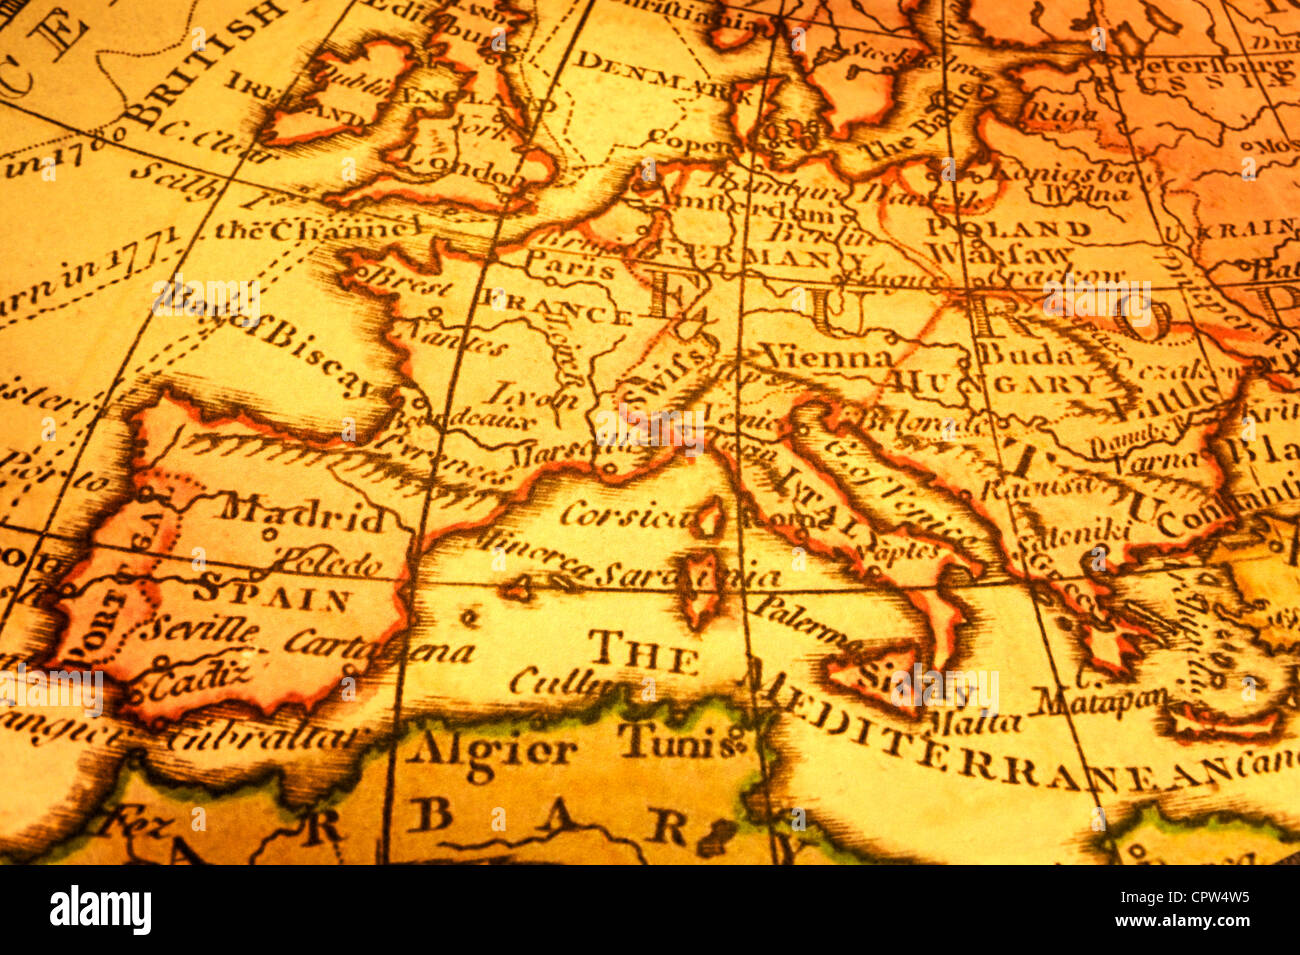 Alte Karte Von Europa Und Mittelmeerraum Karte Von 1786 Ist Und Nicht Urheberrechtlich Geschutzt Ist Stockfotografie Alamy